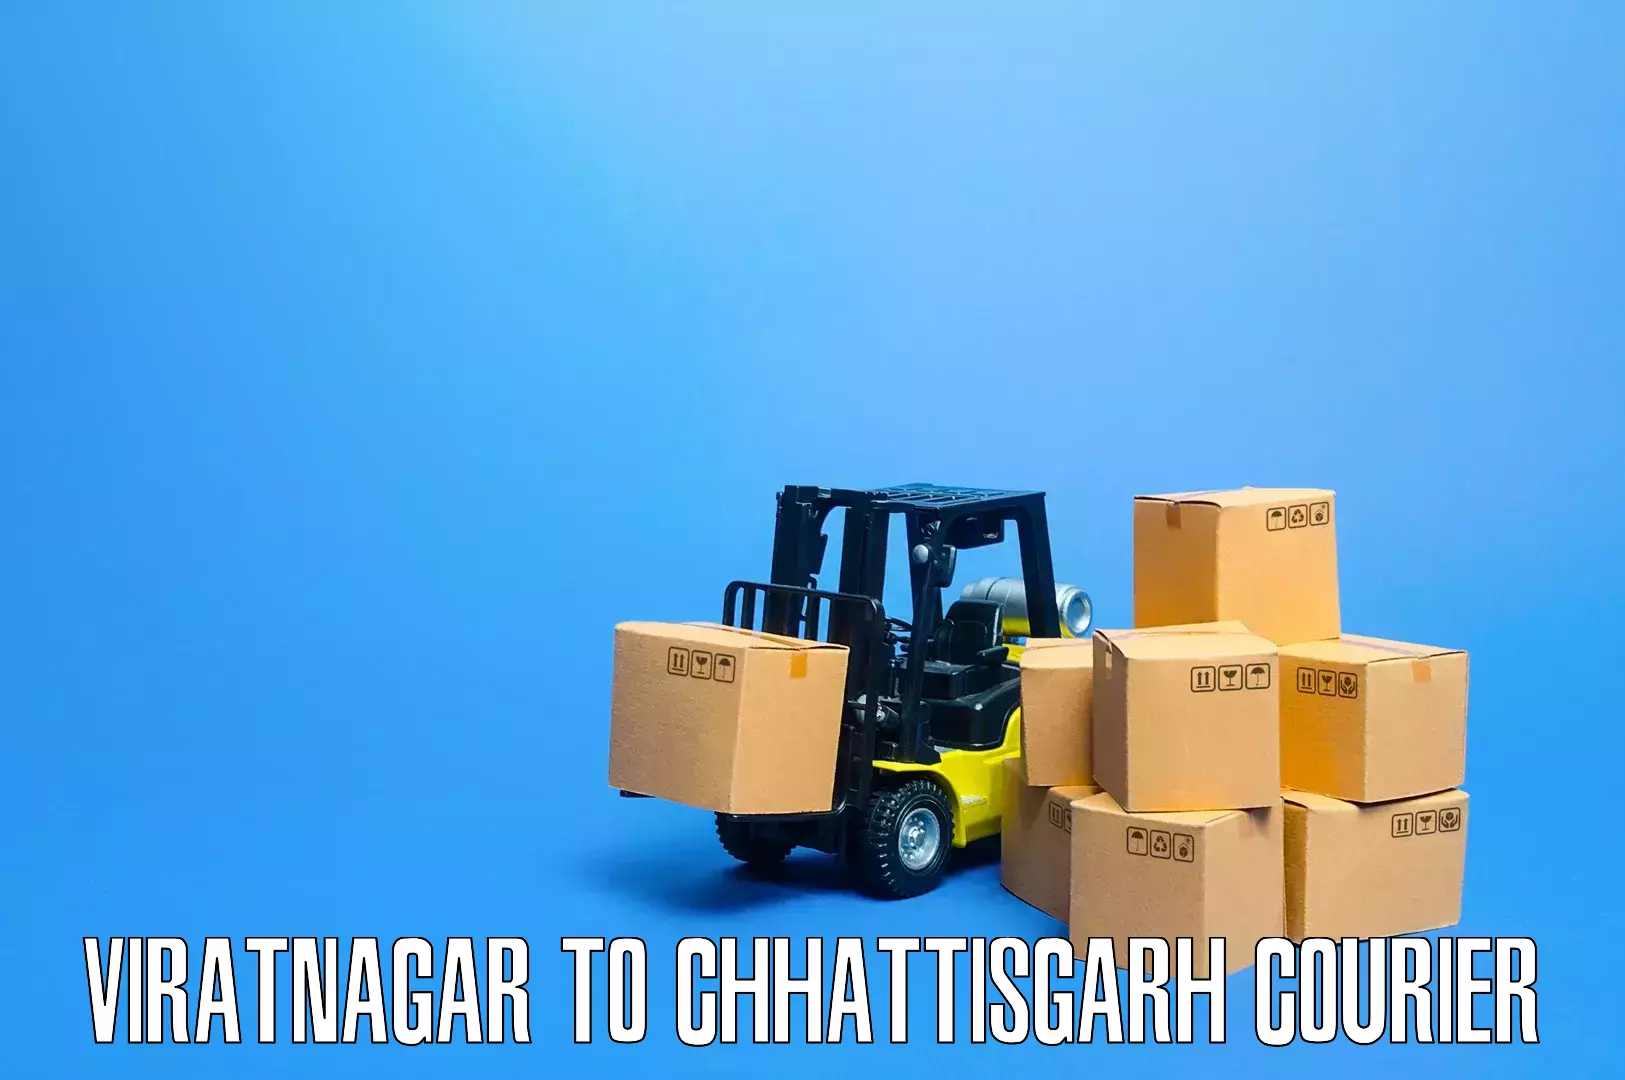 Efficient moving and packing Viratnagar to Pathalgaon